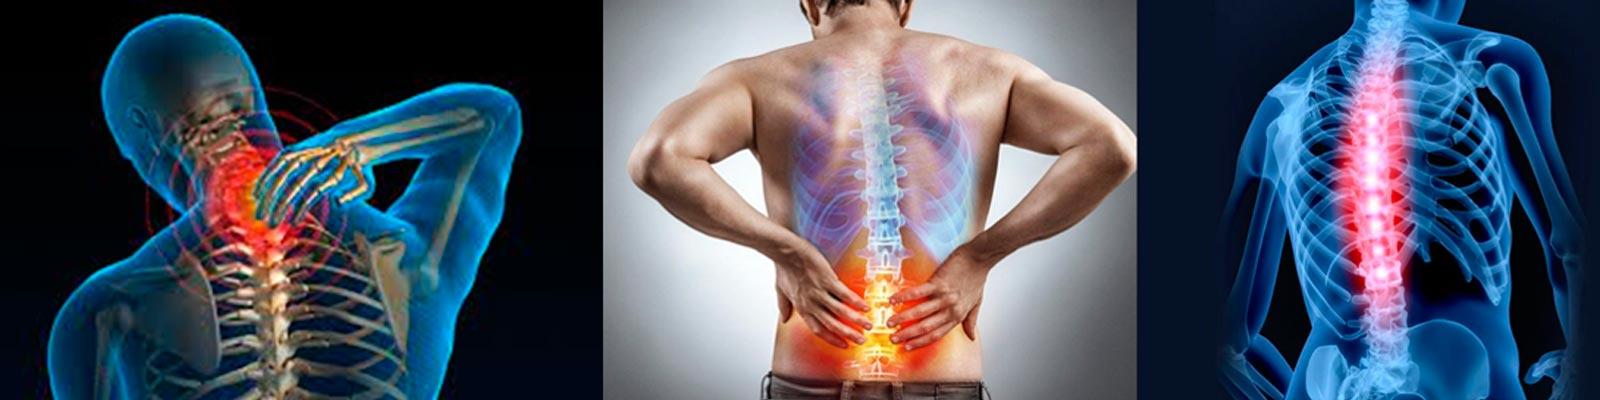 Patologías de la columna vertebral ¿cómo prevenir el dolor?